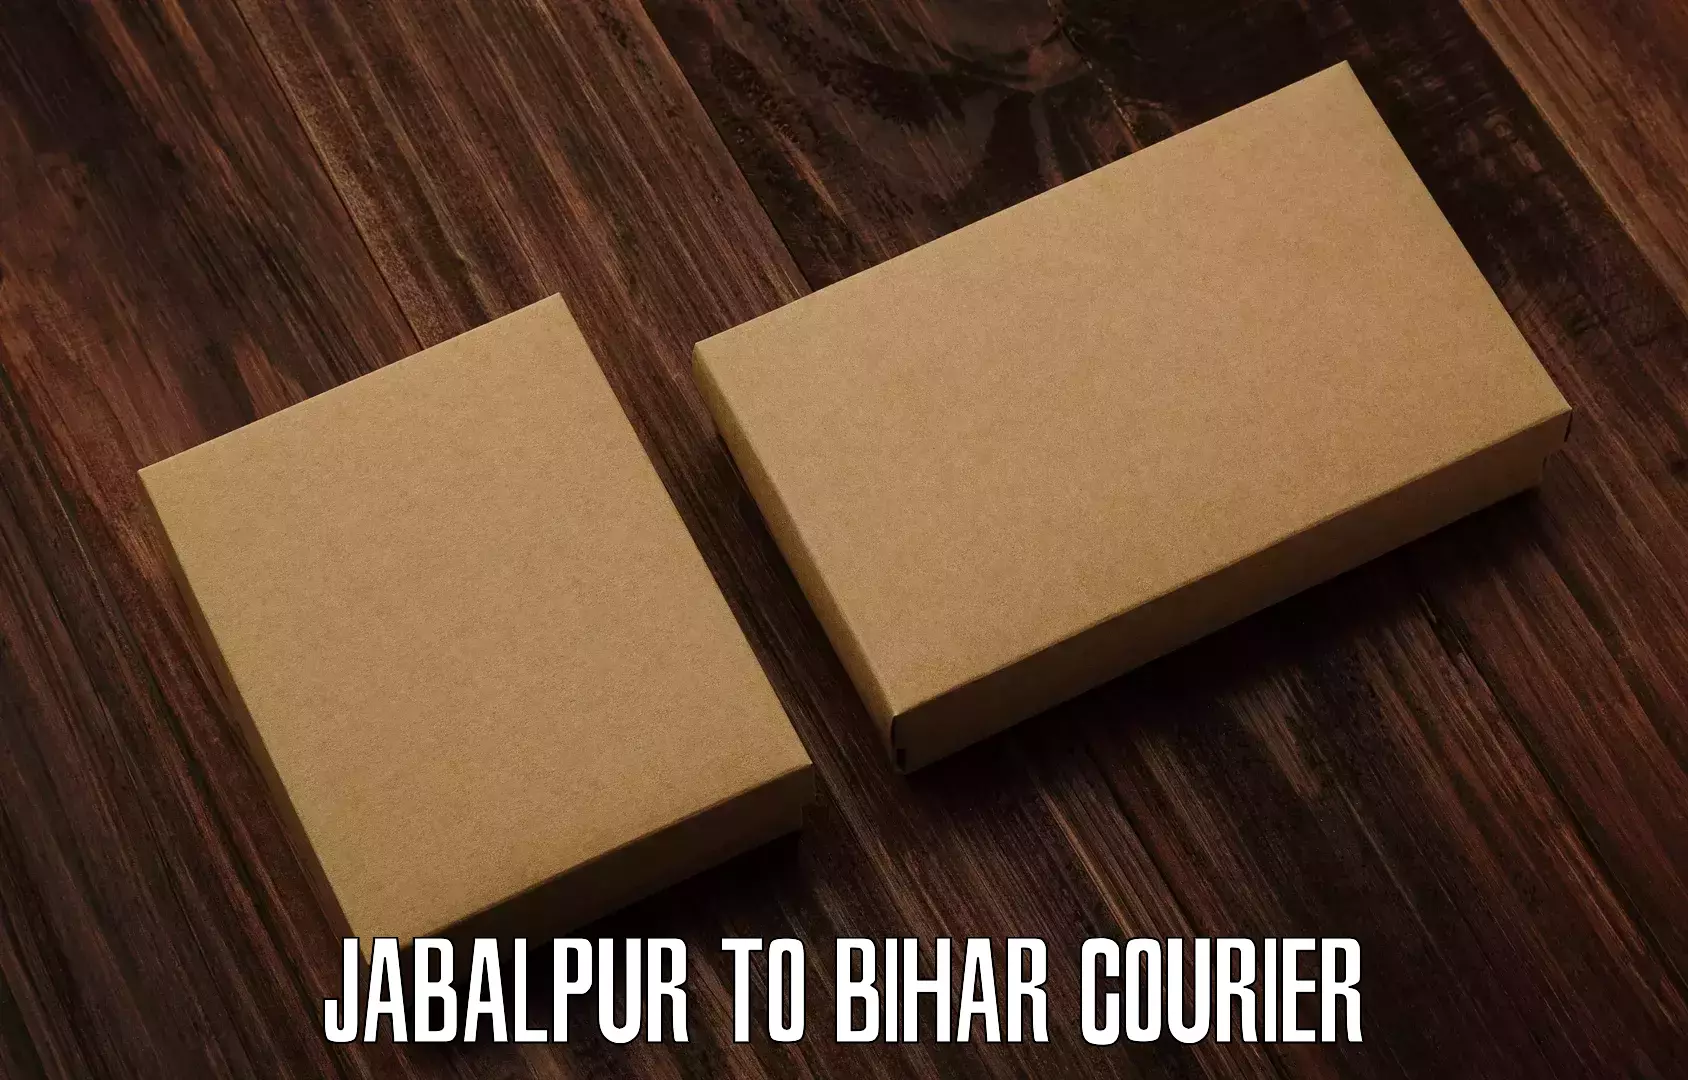 Courier service comparison Jabalpur to Sudhani